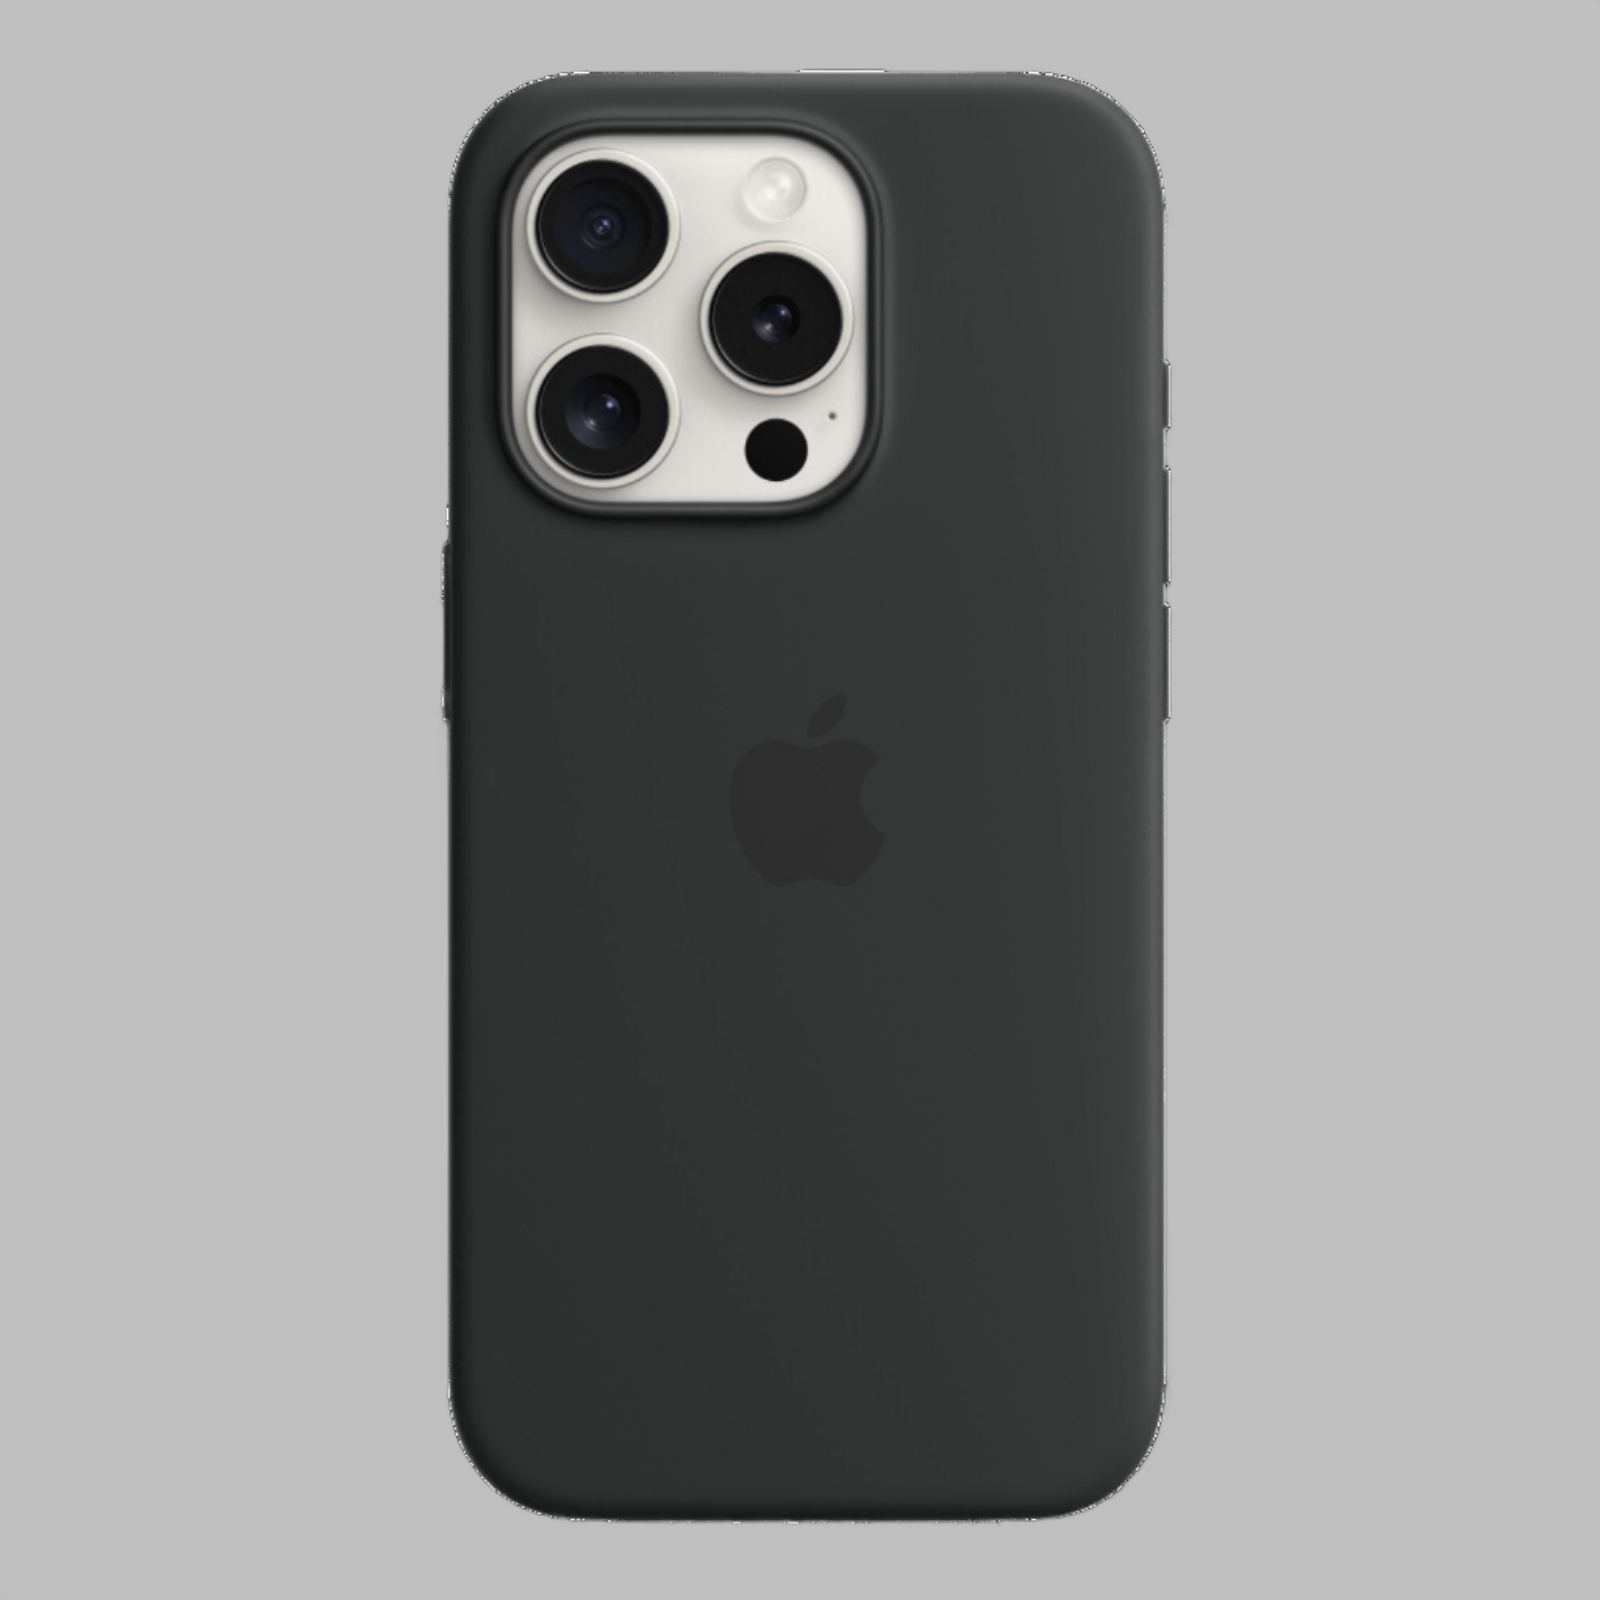 iPhone Silicone Case - Black